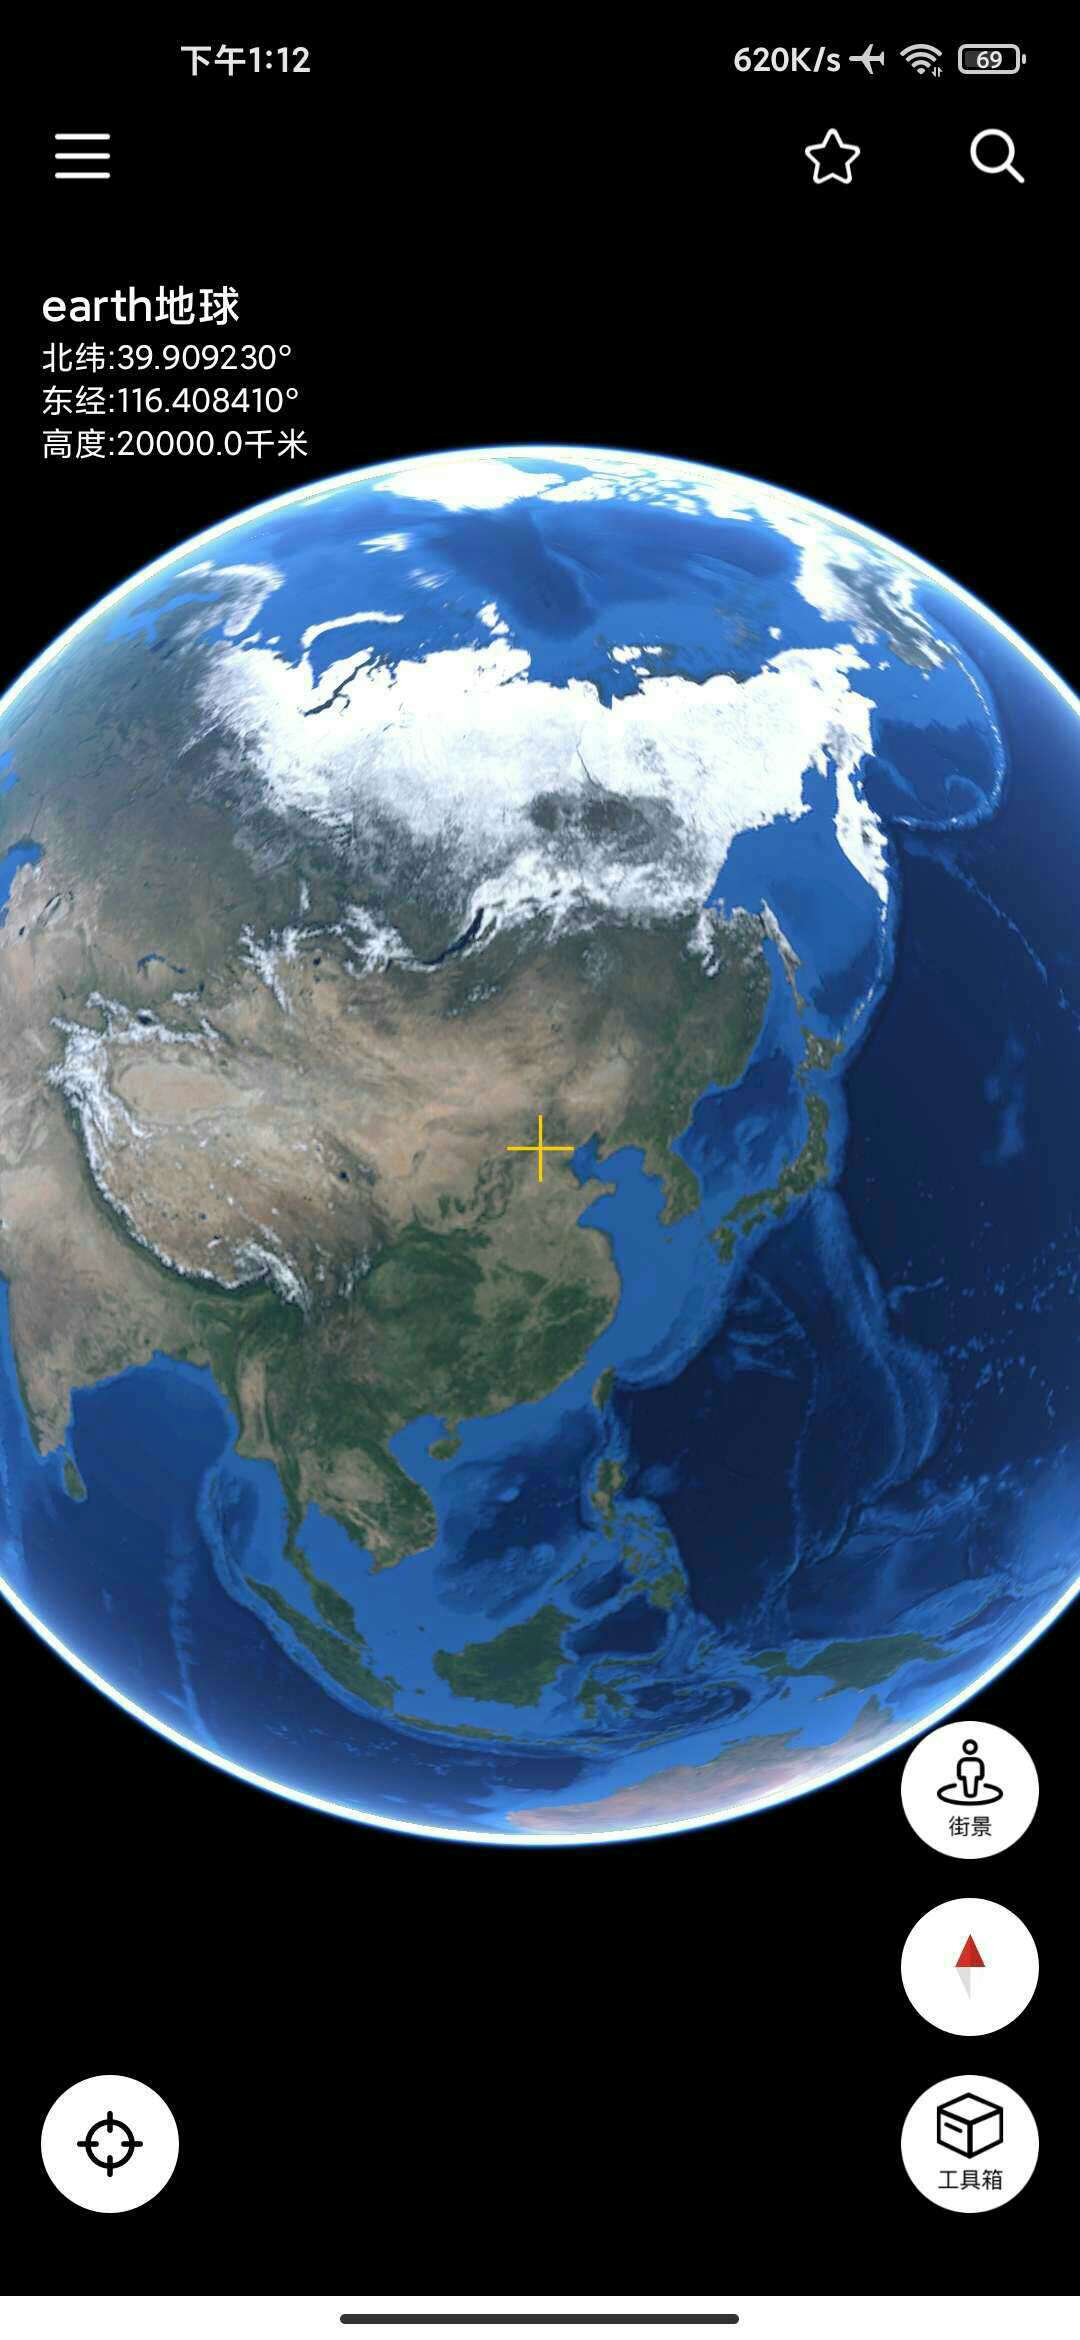 卫星谷歌高清地图图片